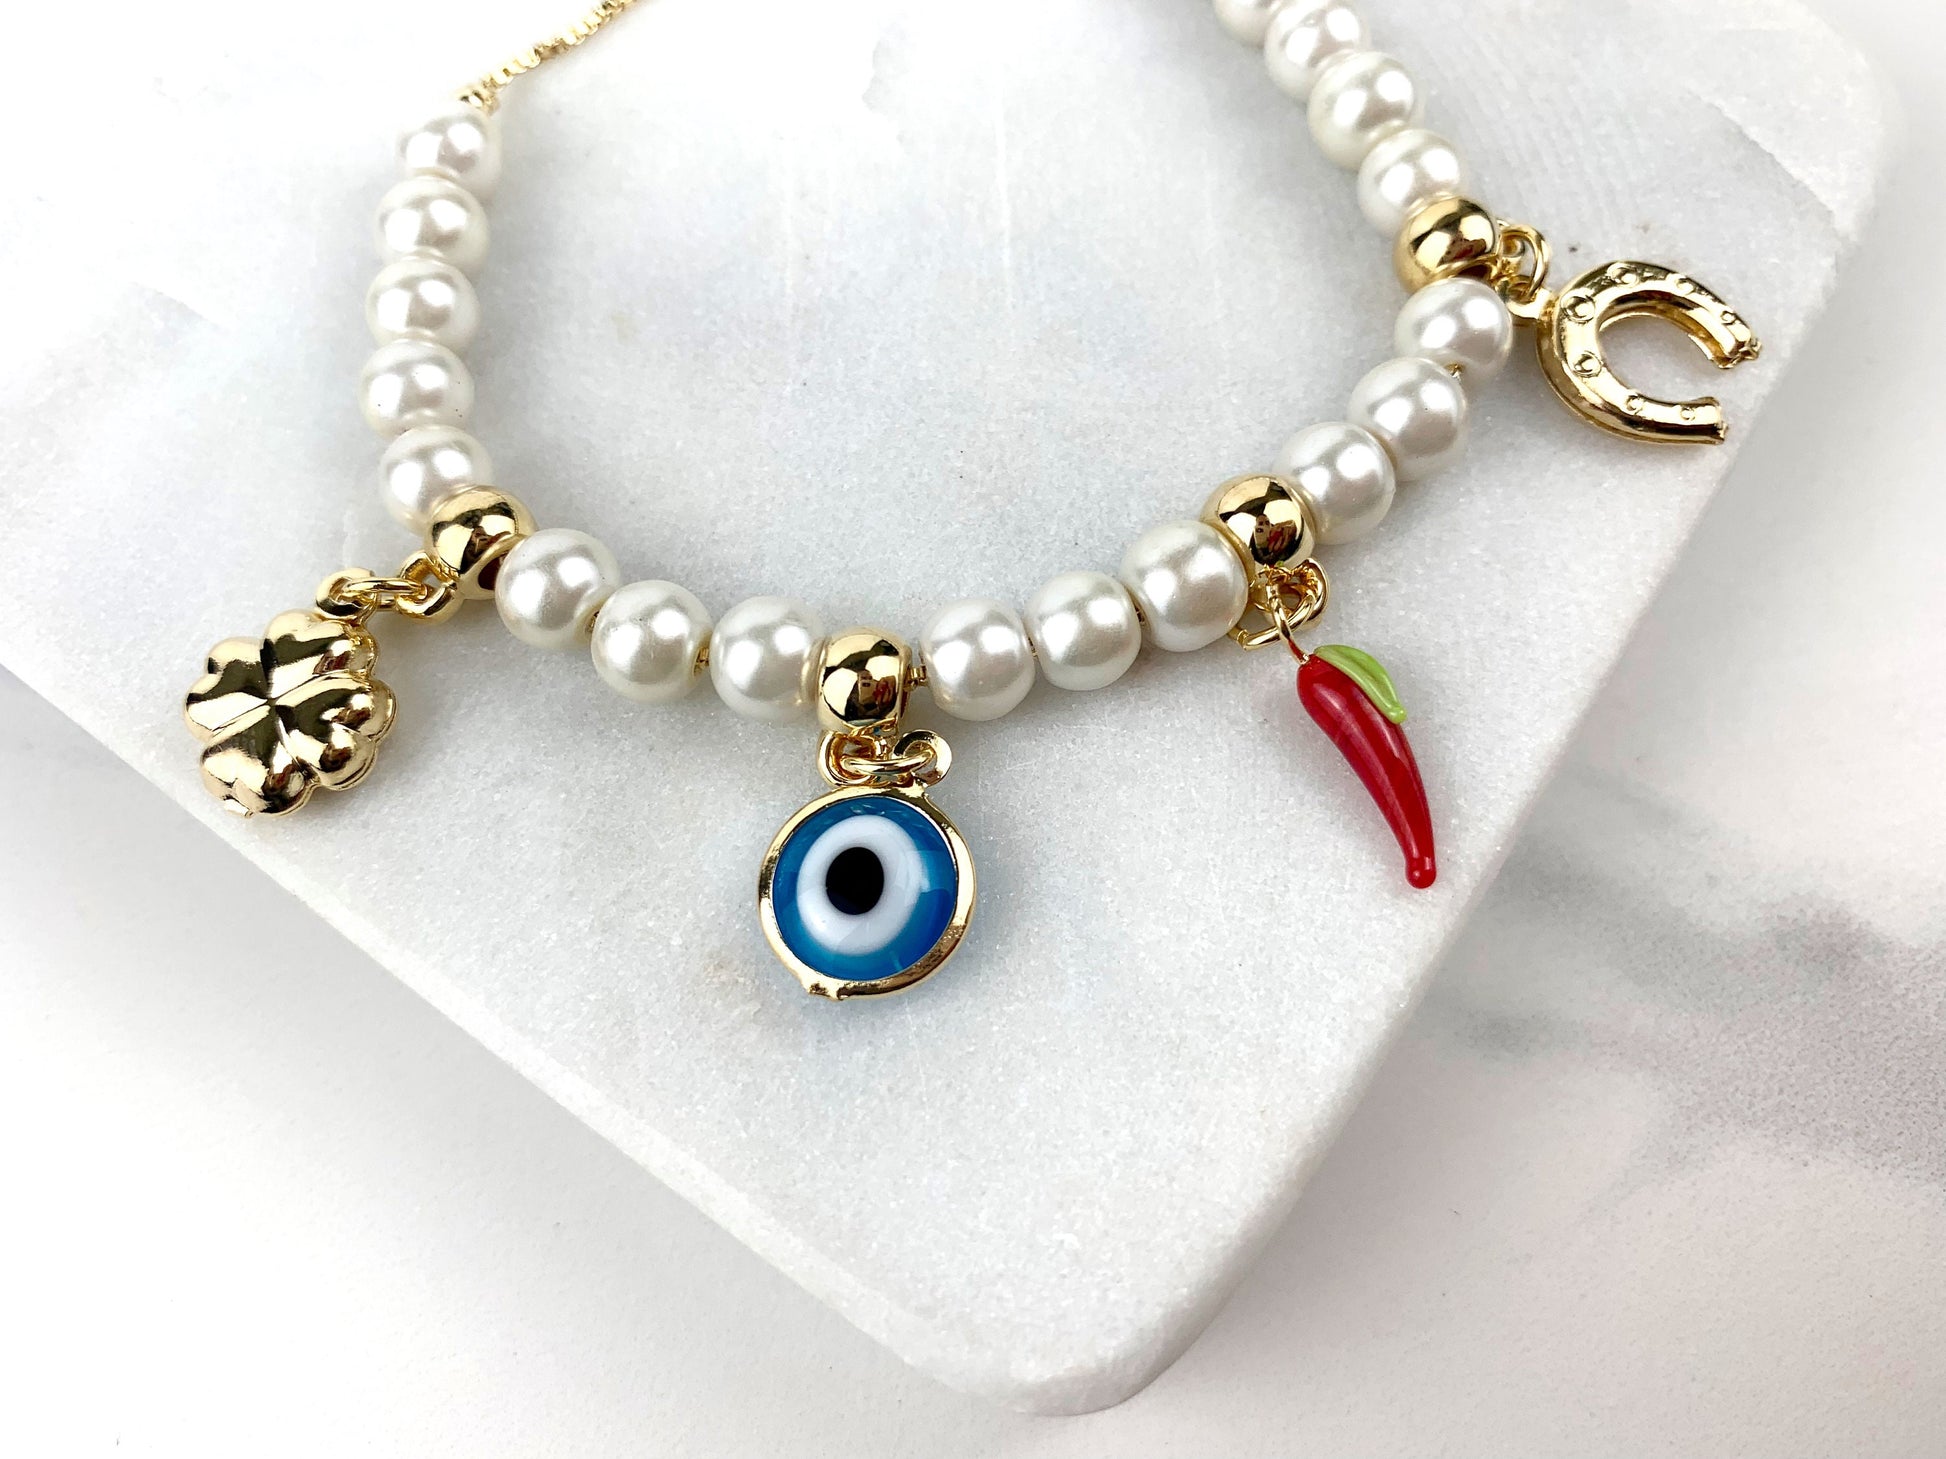 18k Gold Filled Fancy White Pearls, Greek Eyes Lucky Bracelet Wholesale Jewelry Supplies